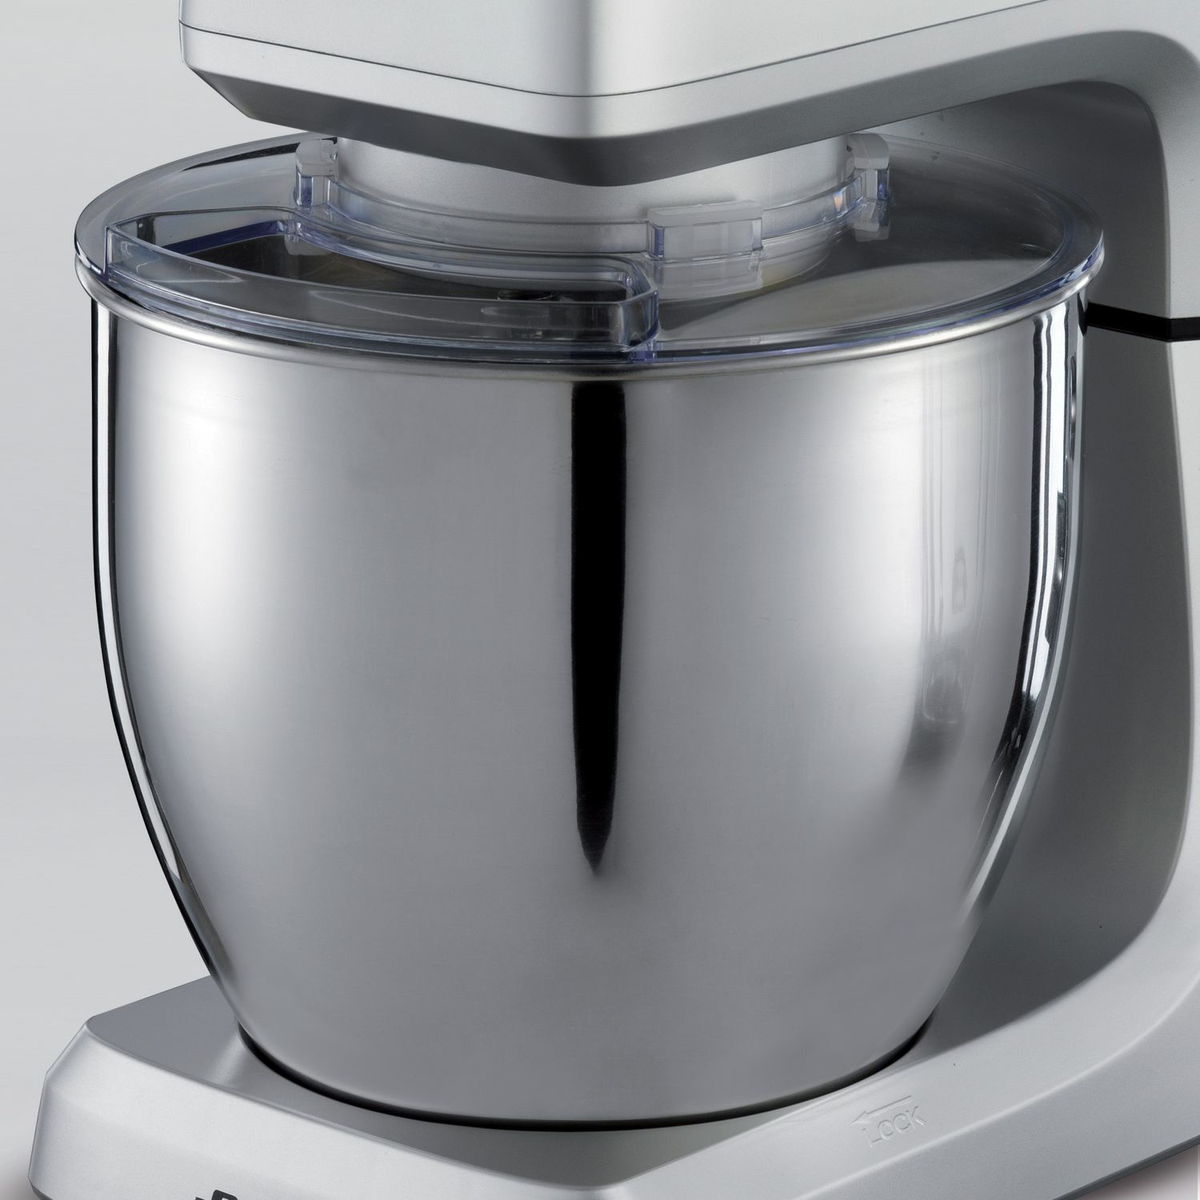 ARI15981 Silber ARIETE Watt) (2100 Küchenmaschine